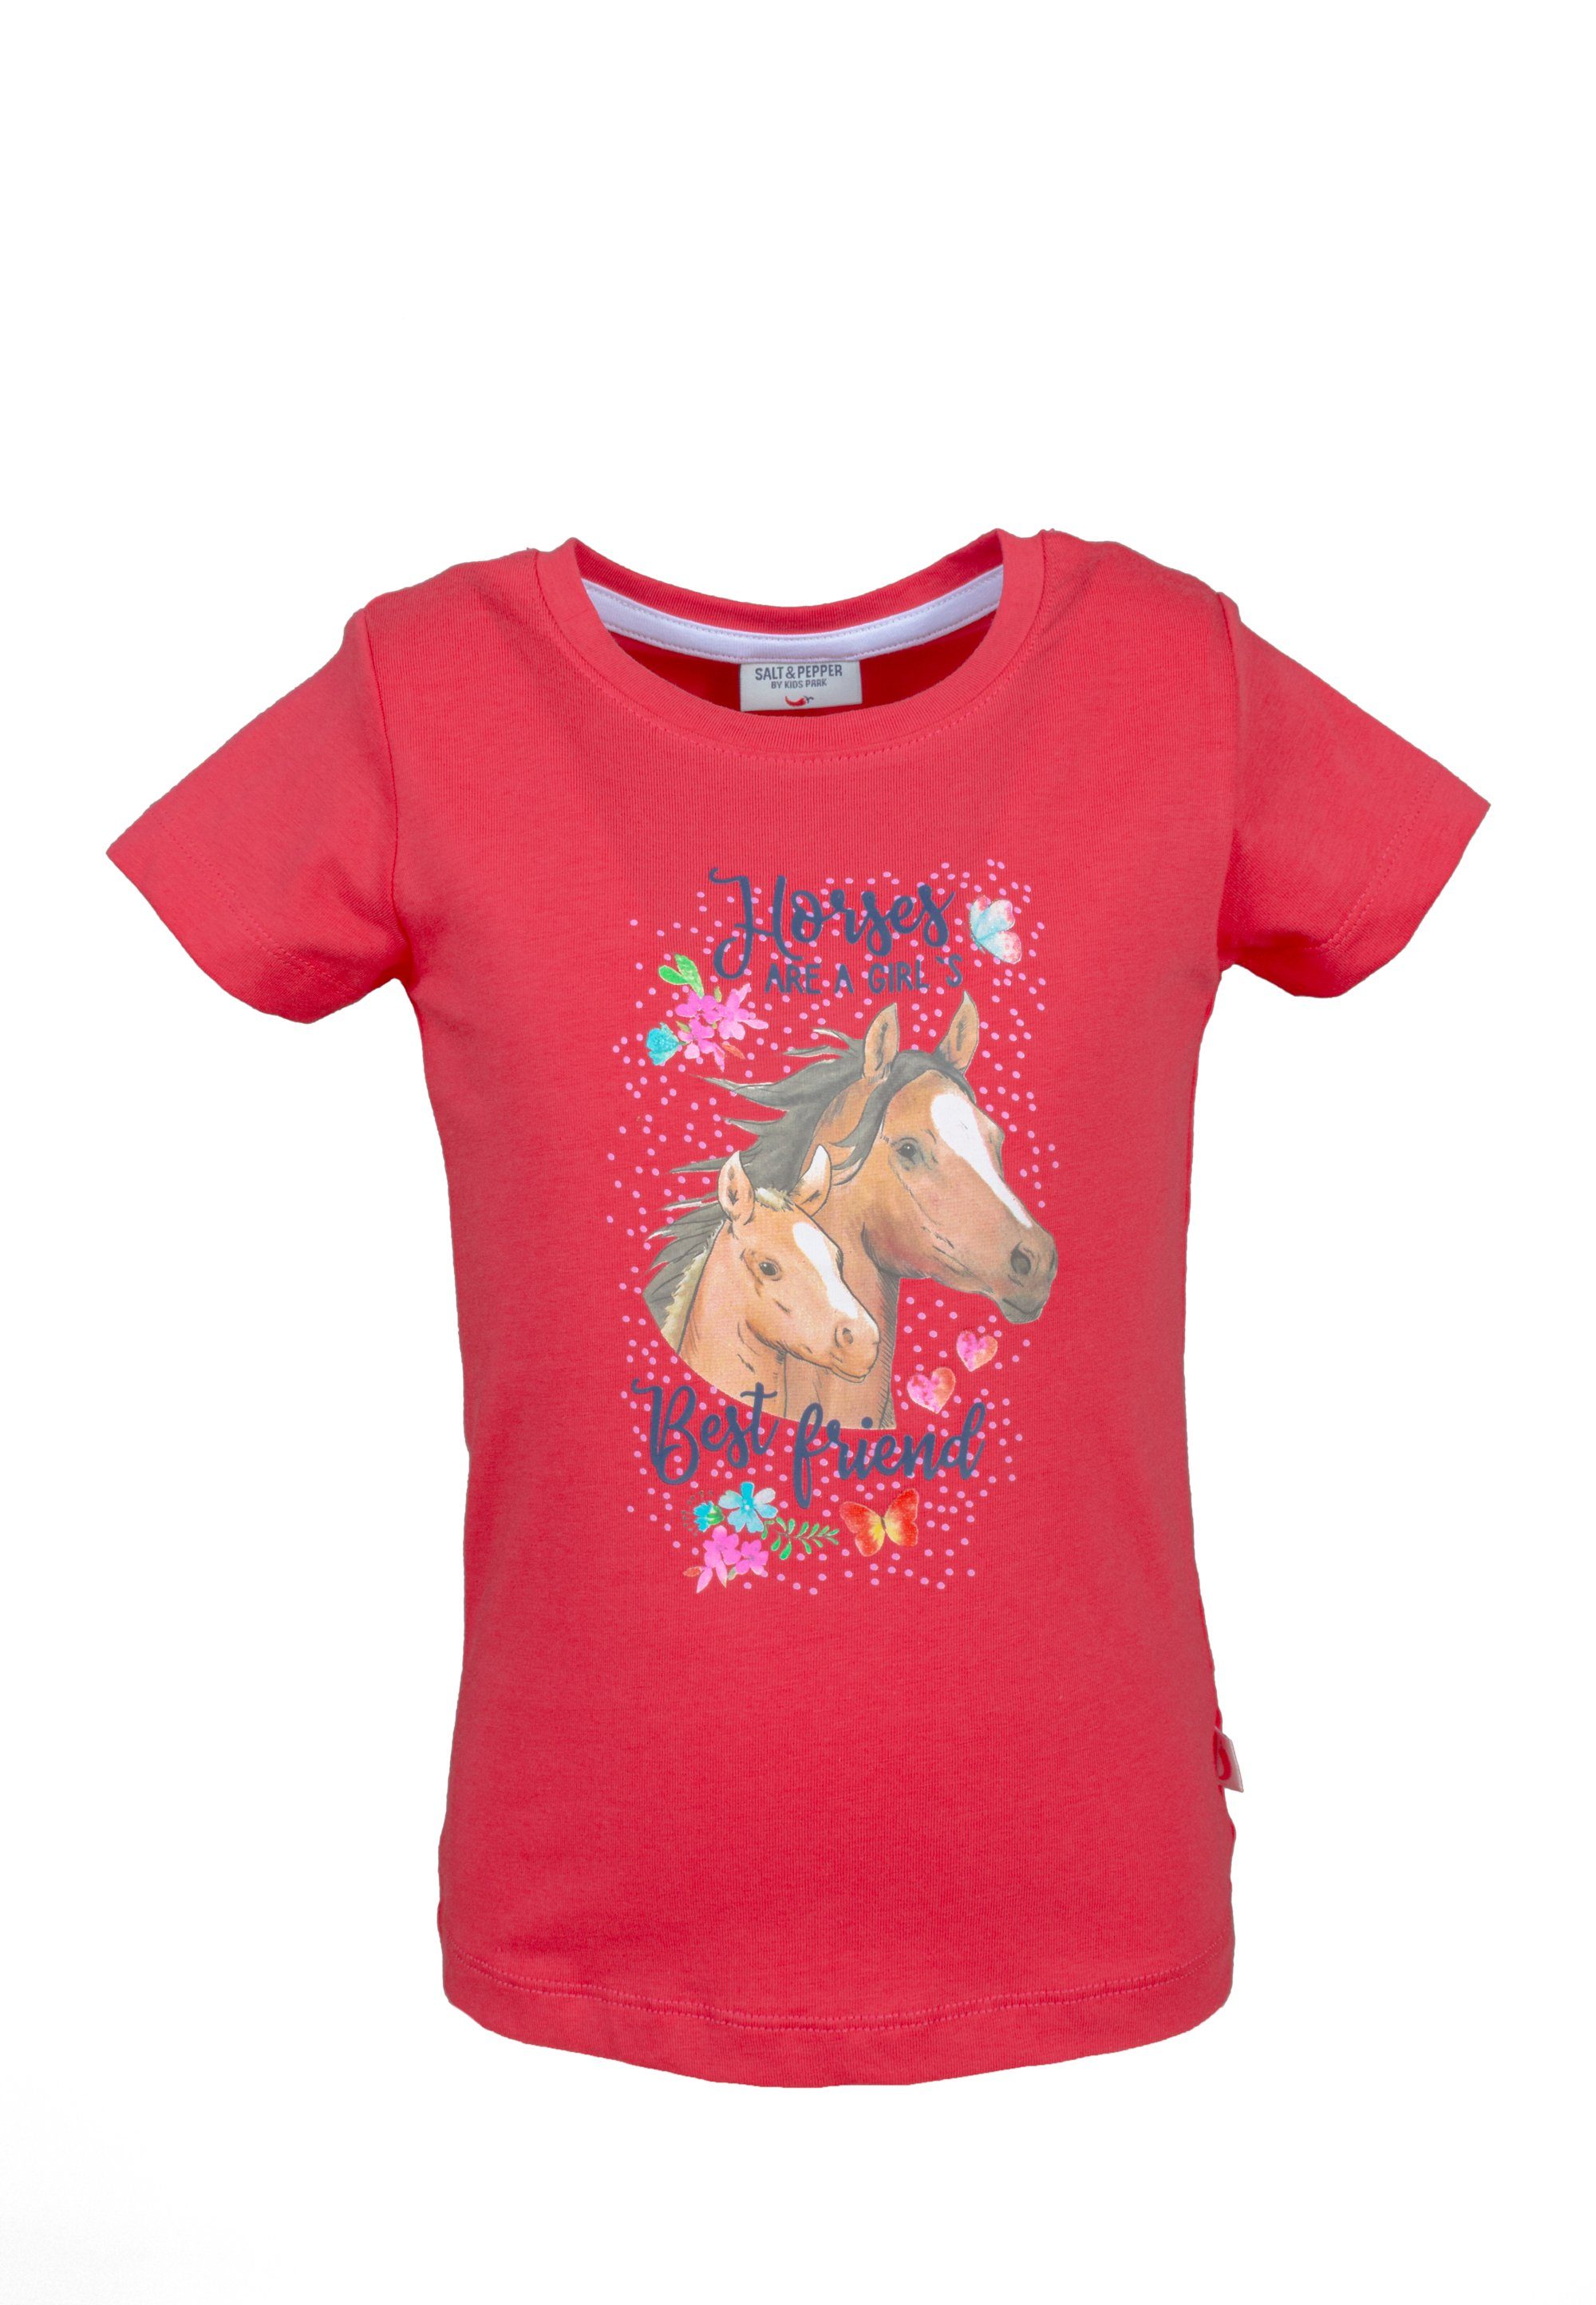 Girls red SALT T-Shirt lollipop Print AND Horses NOS PEPPER T-Shirt